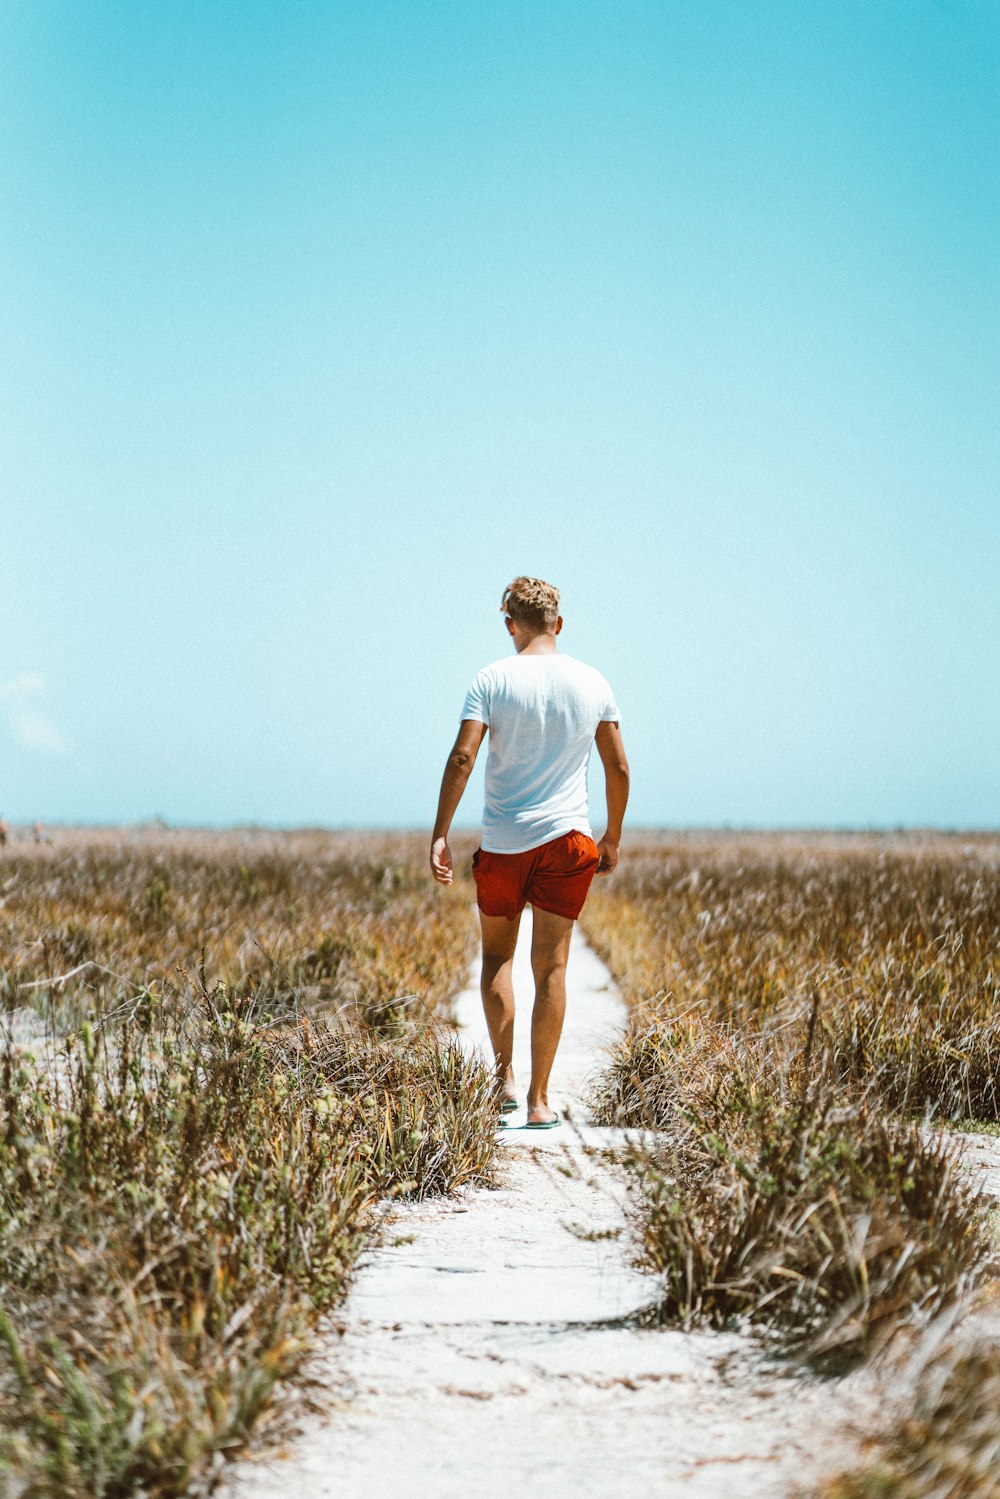 Hombre con camisa blanca y pantalones cortos rojos caminando sobre arena blanca entre hierbas